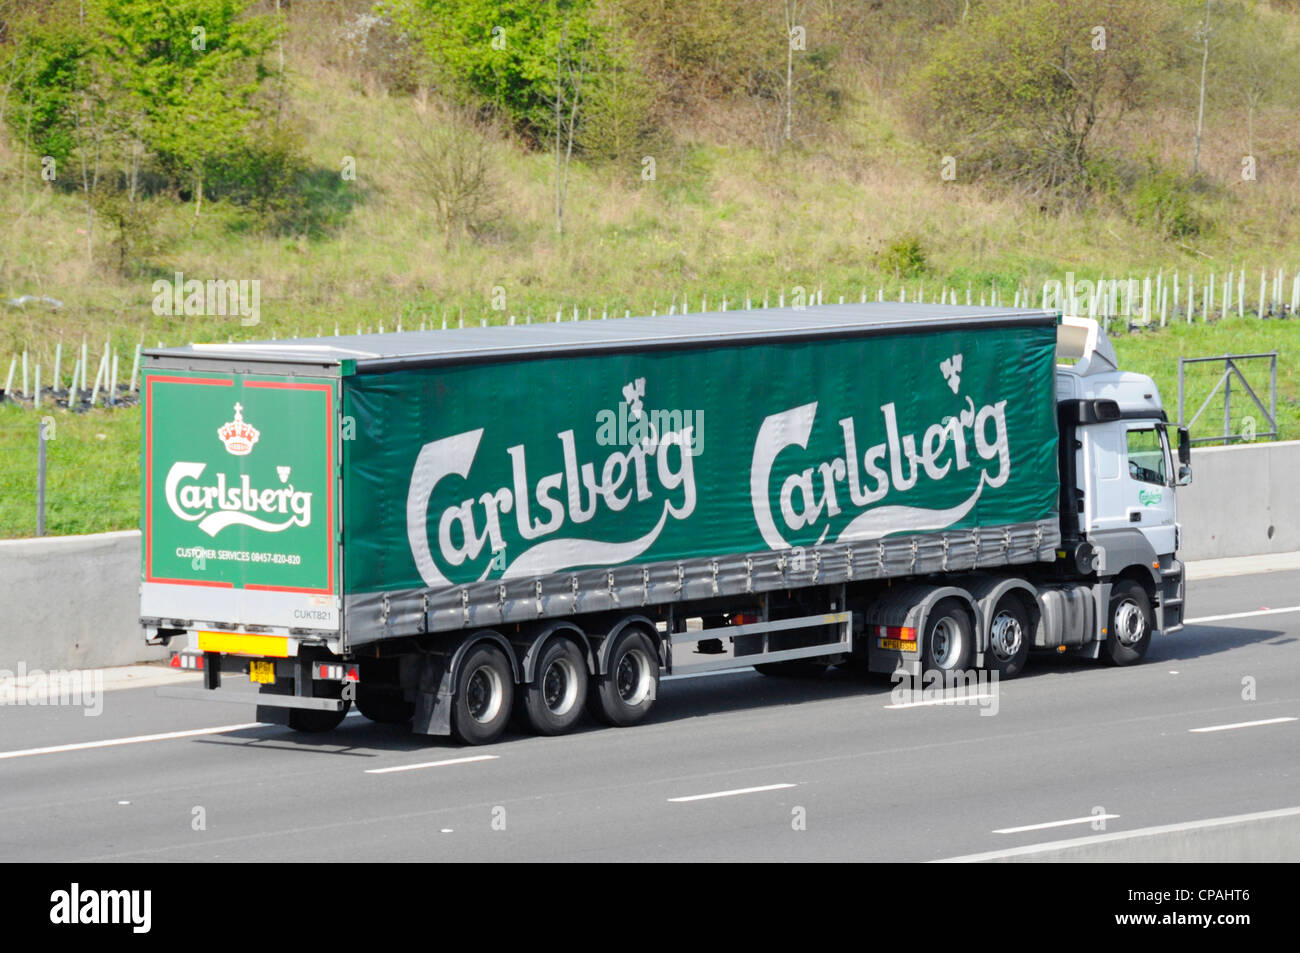 Le brasseur danois Carlsberg supply chain soft verso rideau articulé et remorque camion poids lourds de livraison camion conduisant le long de l'autoroute M25 Angleterre Essex UK Banque D'Images